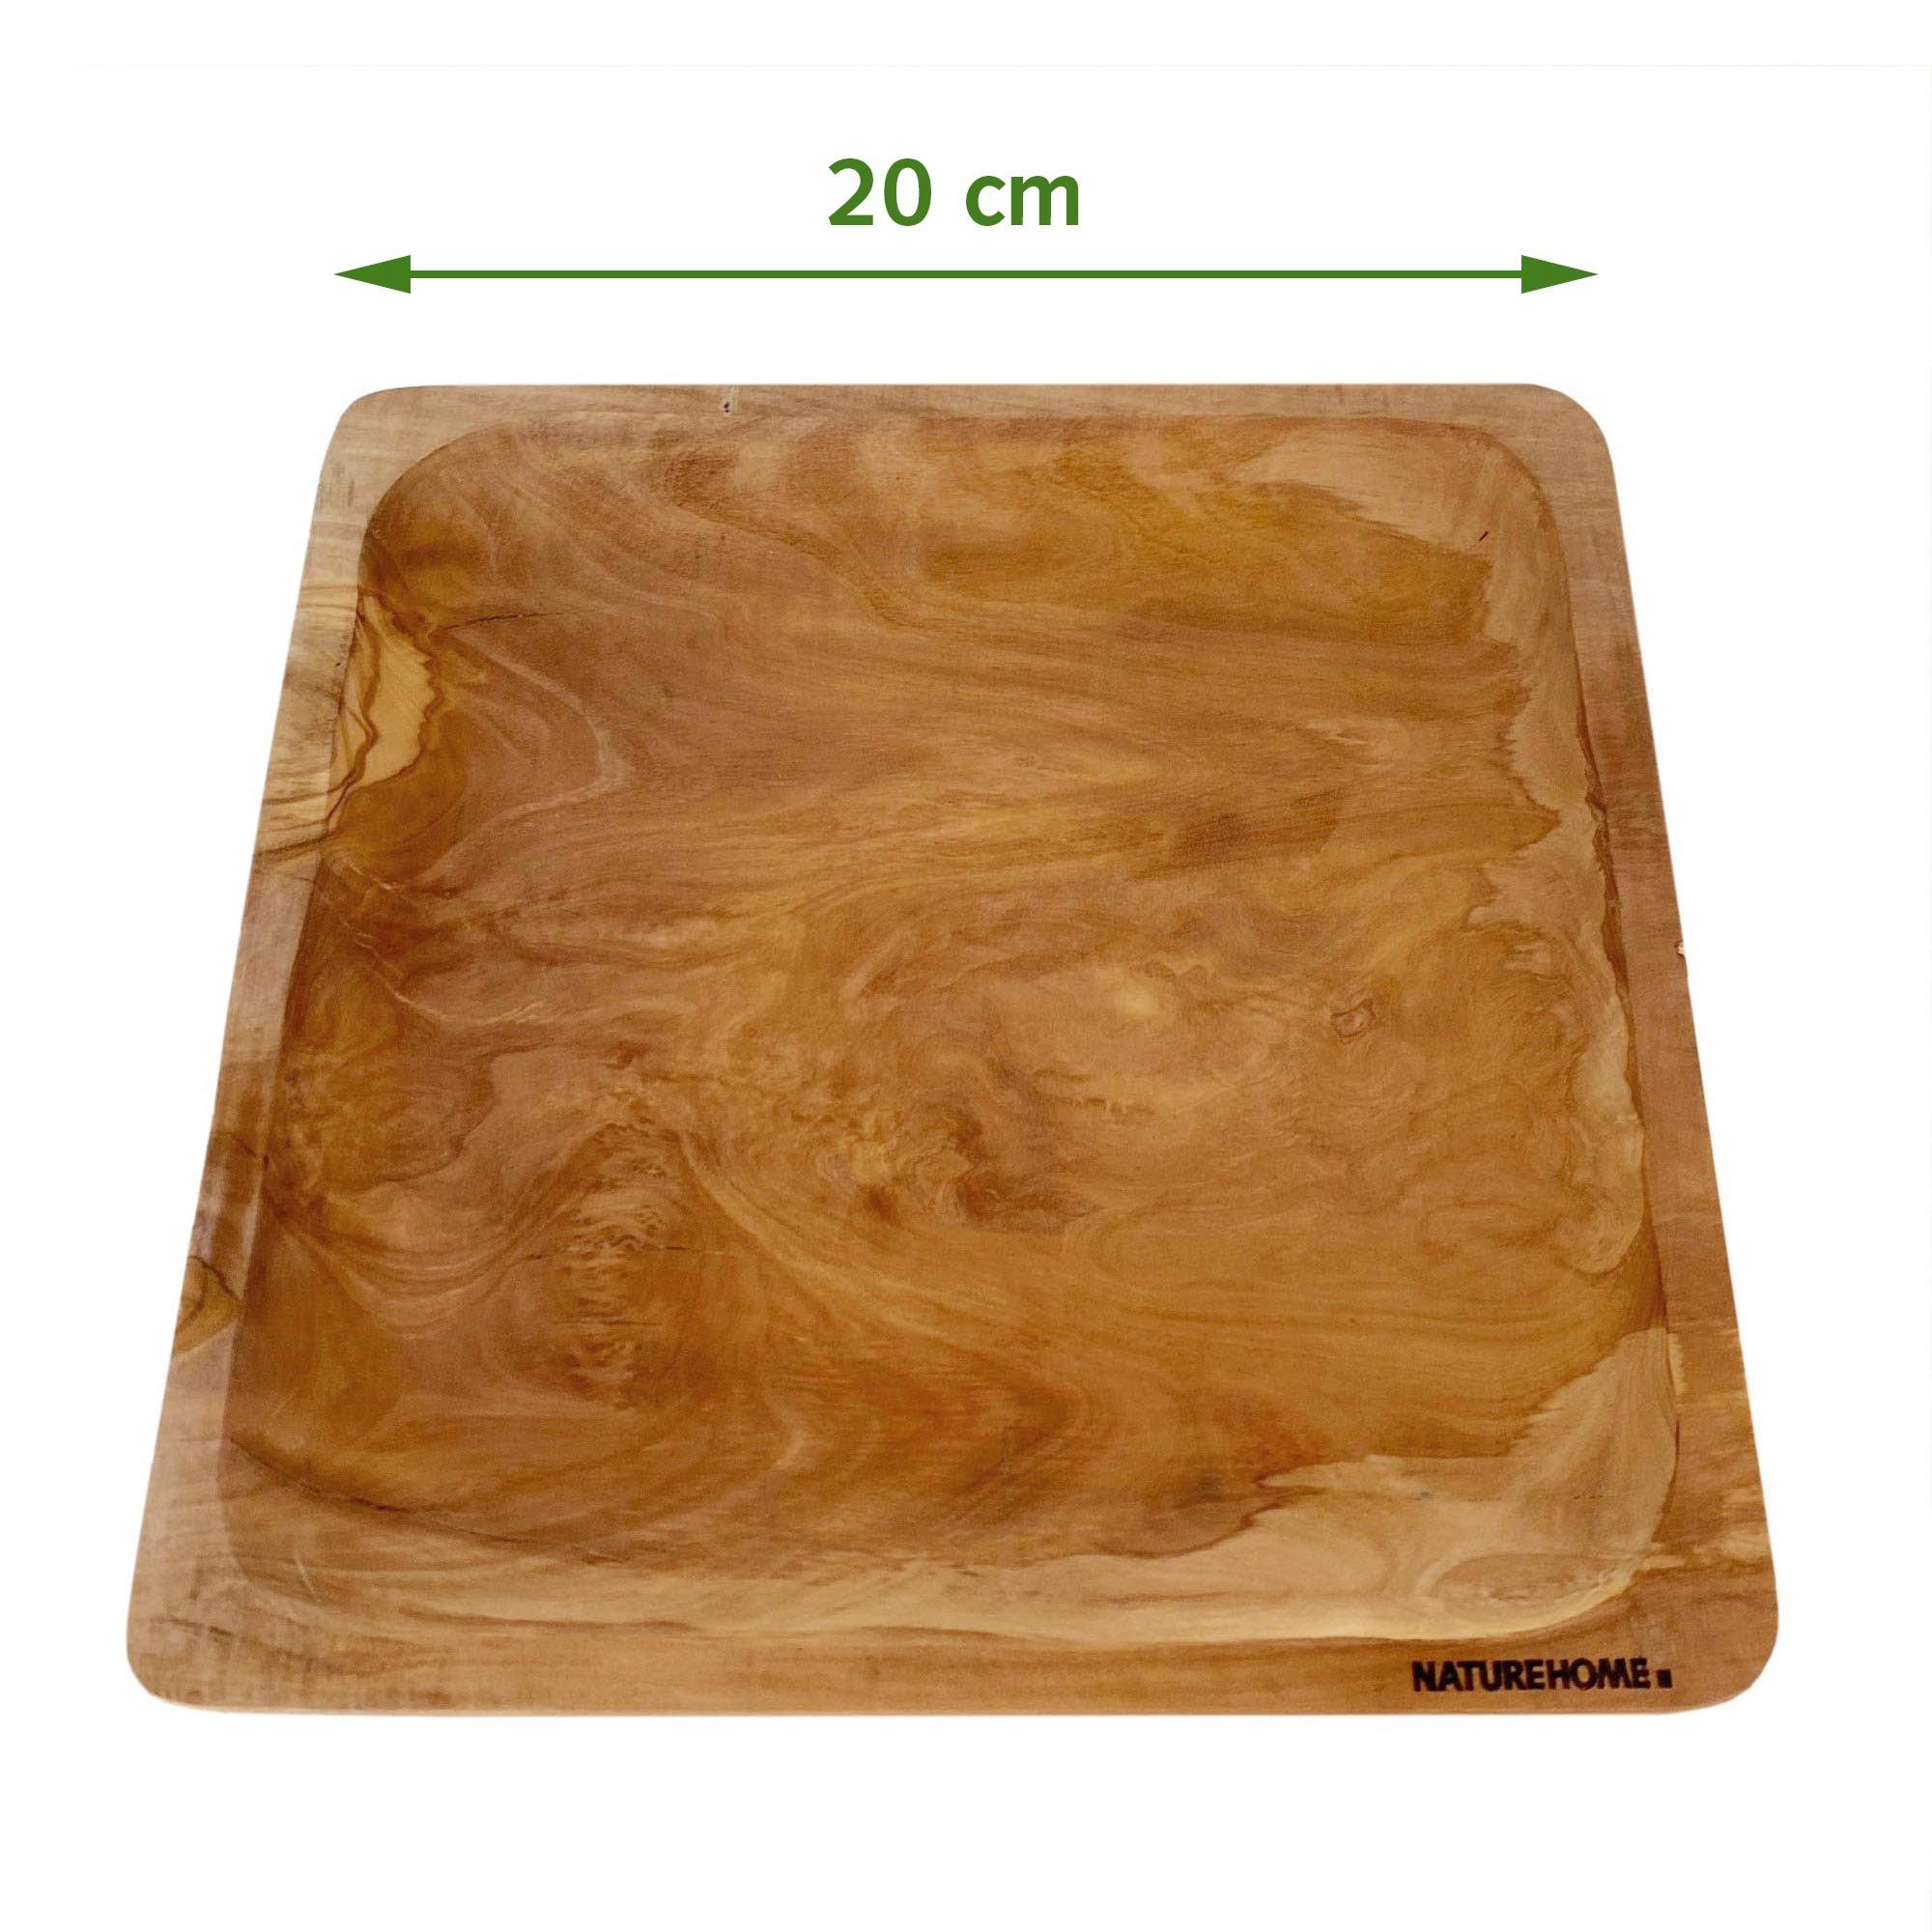 massiv Teller Holz-Teller 100% Olivenholz NATUREHOME NATUREHOME Olivenholz nachhaltig, 20/26cm rund/eckig